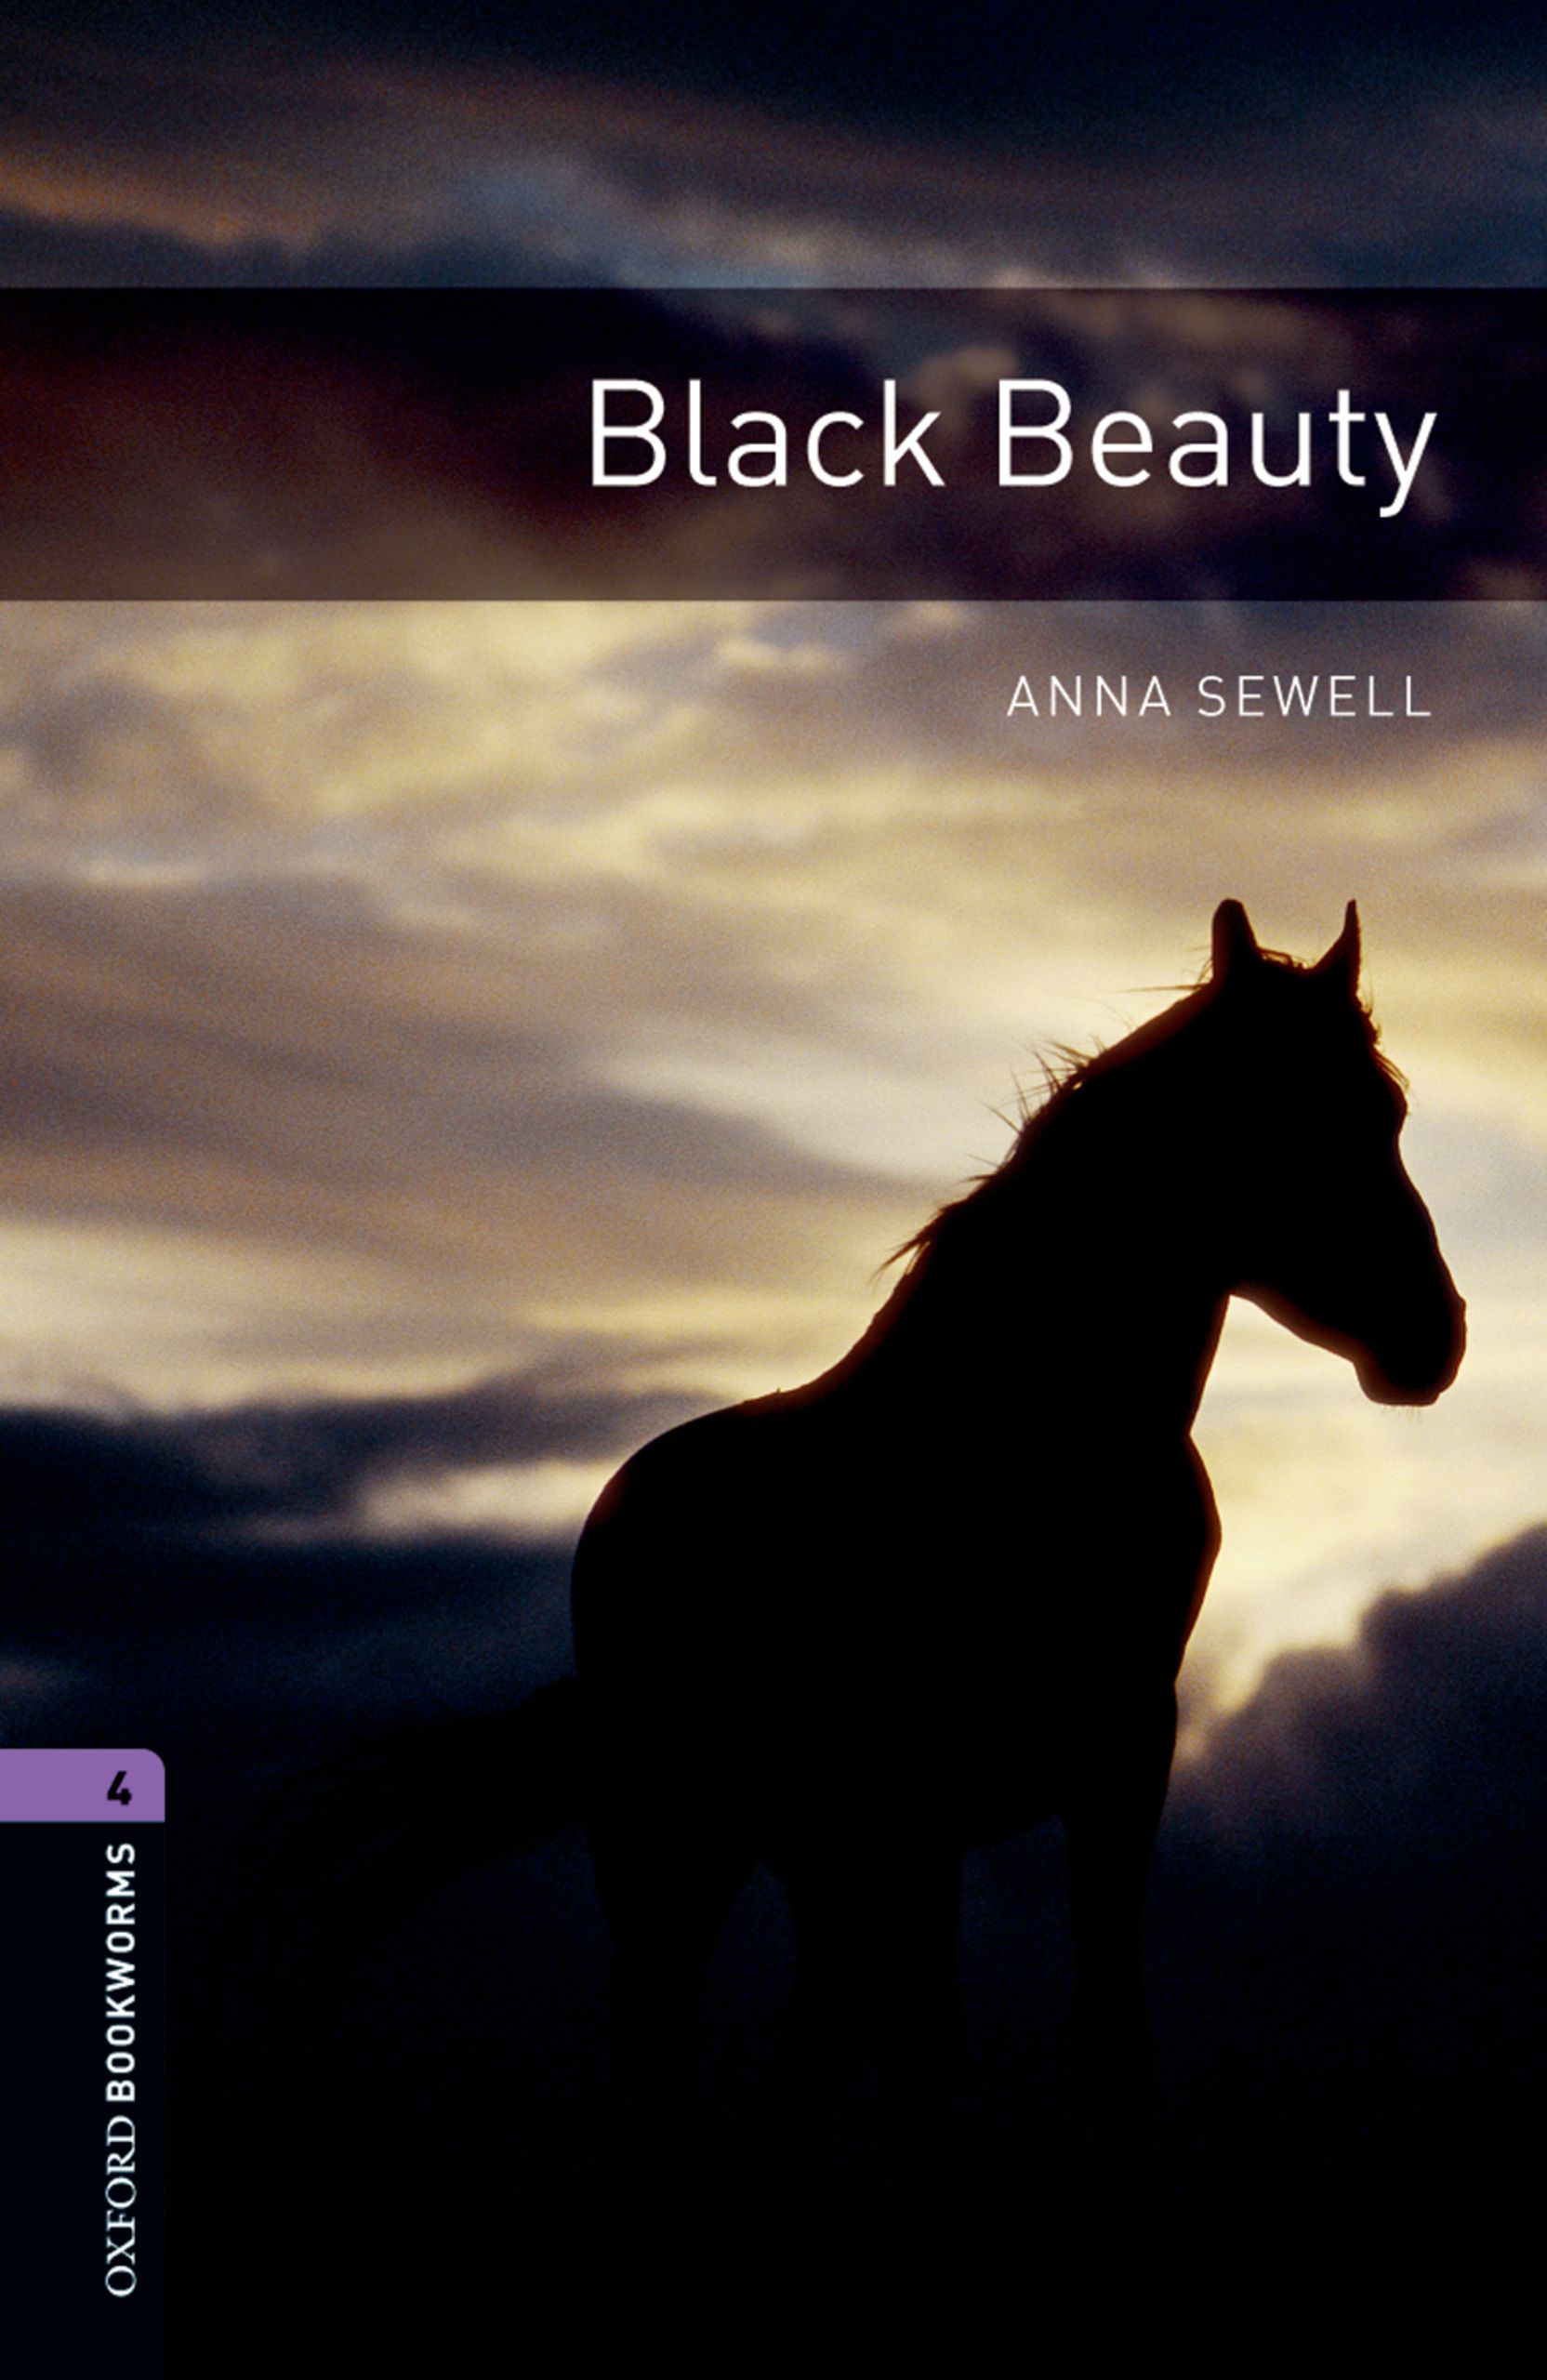 Книга Black Beauty из серии , созданная Anna Sewell, может относится к жанру Иностранные языки, Иностранные языки, Зарубежная образовательная литература. Стоимость электронной книги Black Beauty с идентификатором 23573615 составляет 405.87 руб.